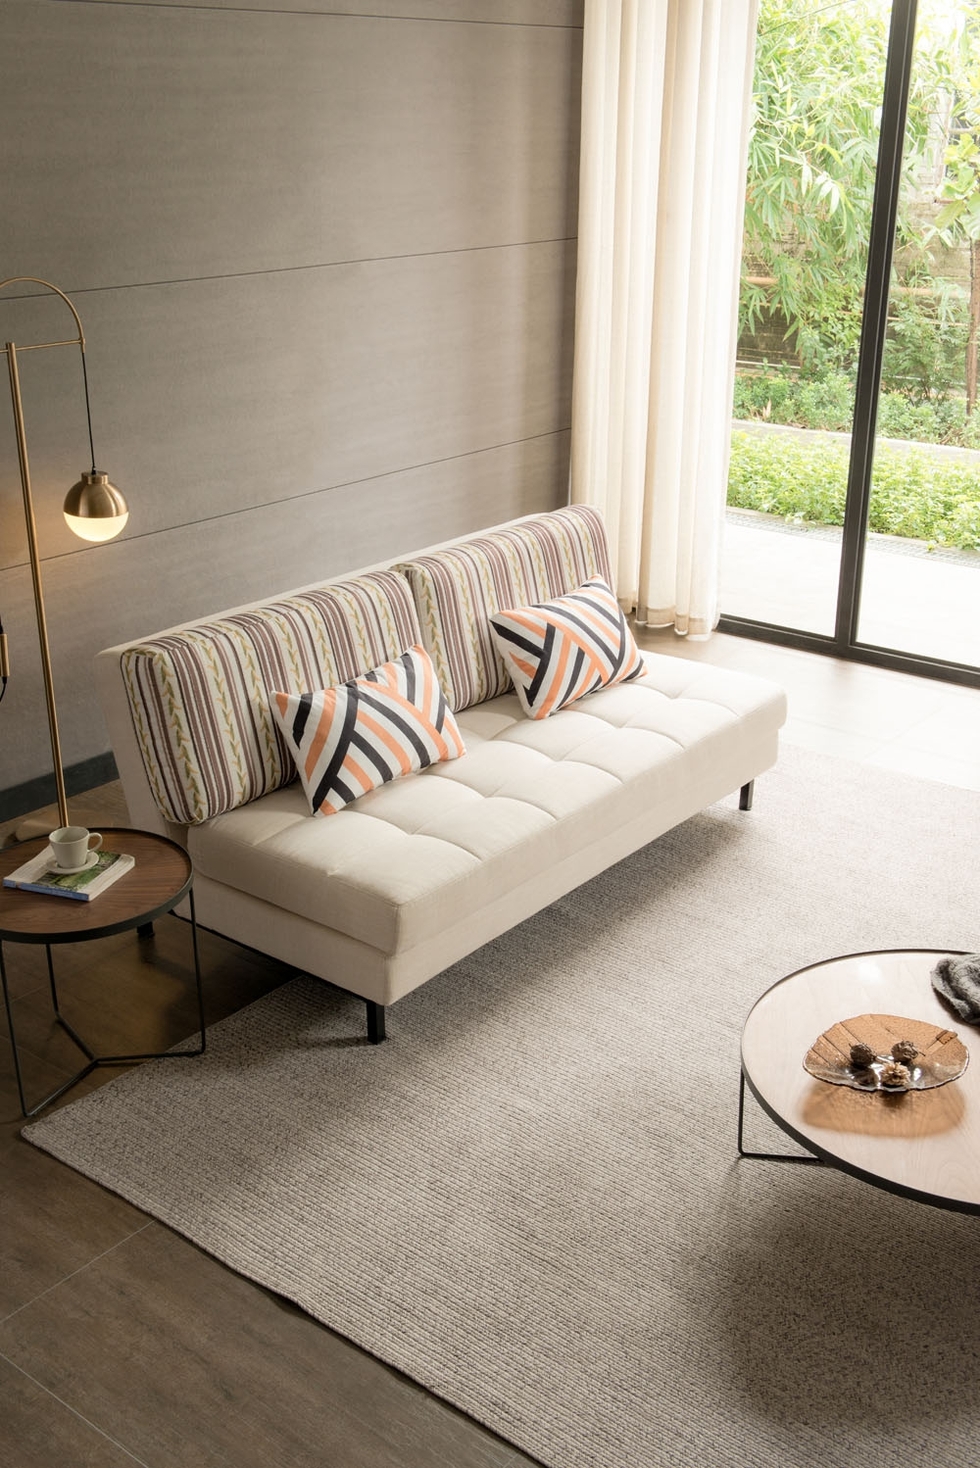 【玛蒂斯】极简风格沙发 可作沙发床多用公寓沙发 小户型客厅沙发 005